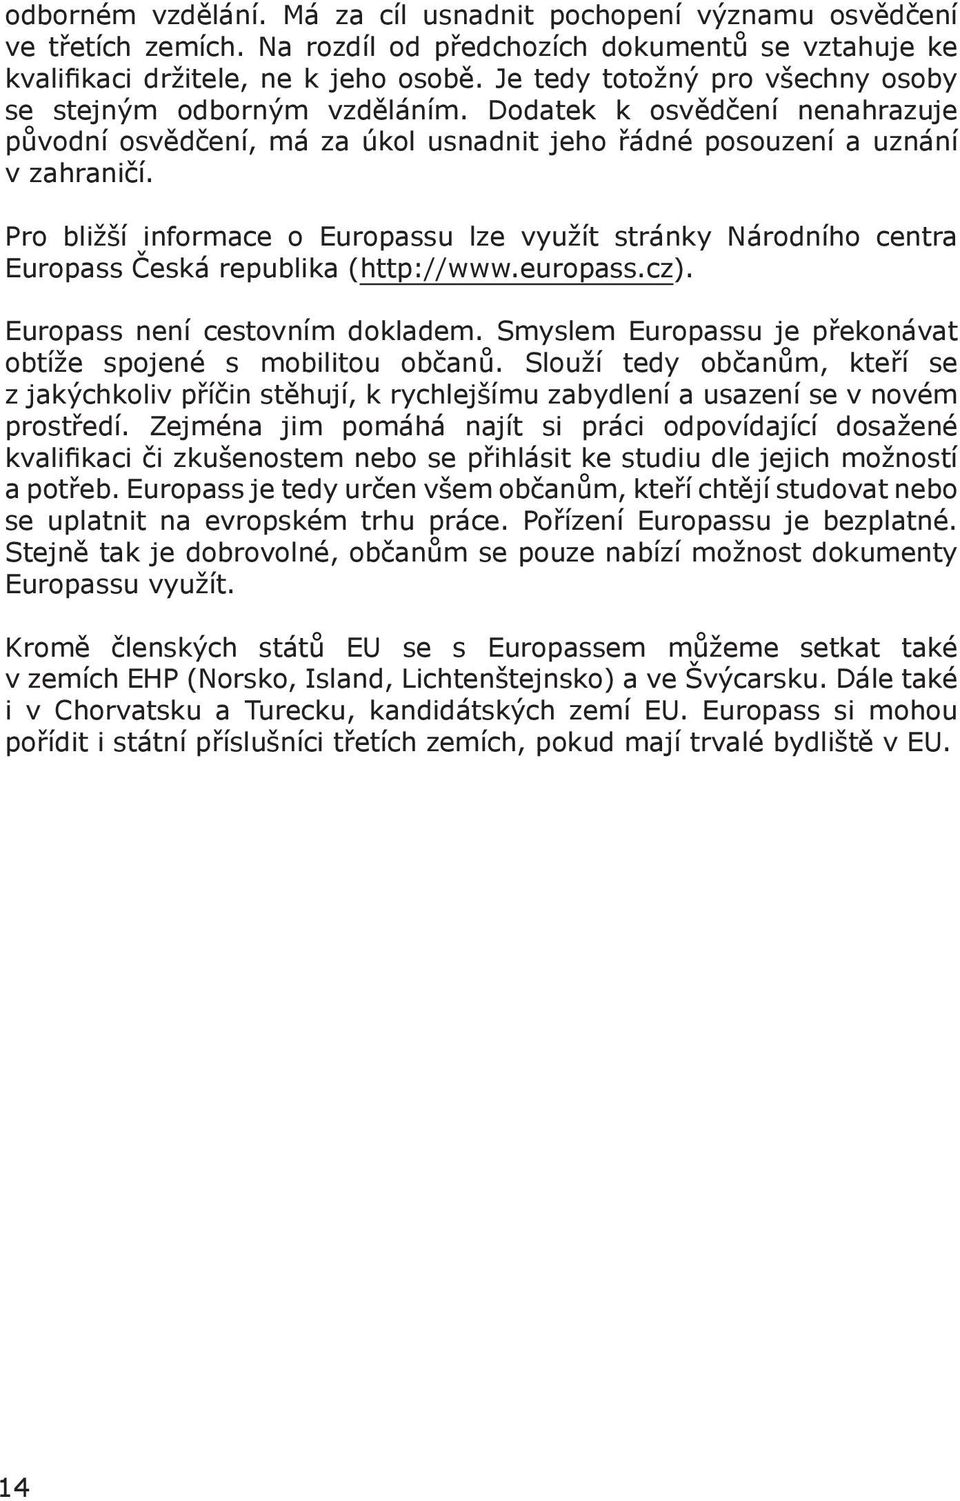 Pro bližší informace o Europassu lze využít stránky Národního centra Europass Česká republika (http://www.europass.cz). Europass není cestovním dokladem.